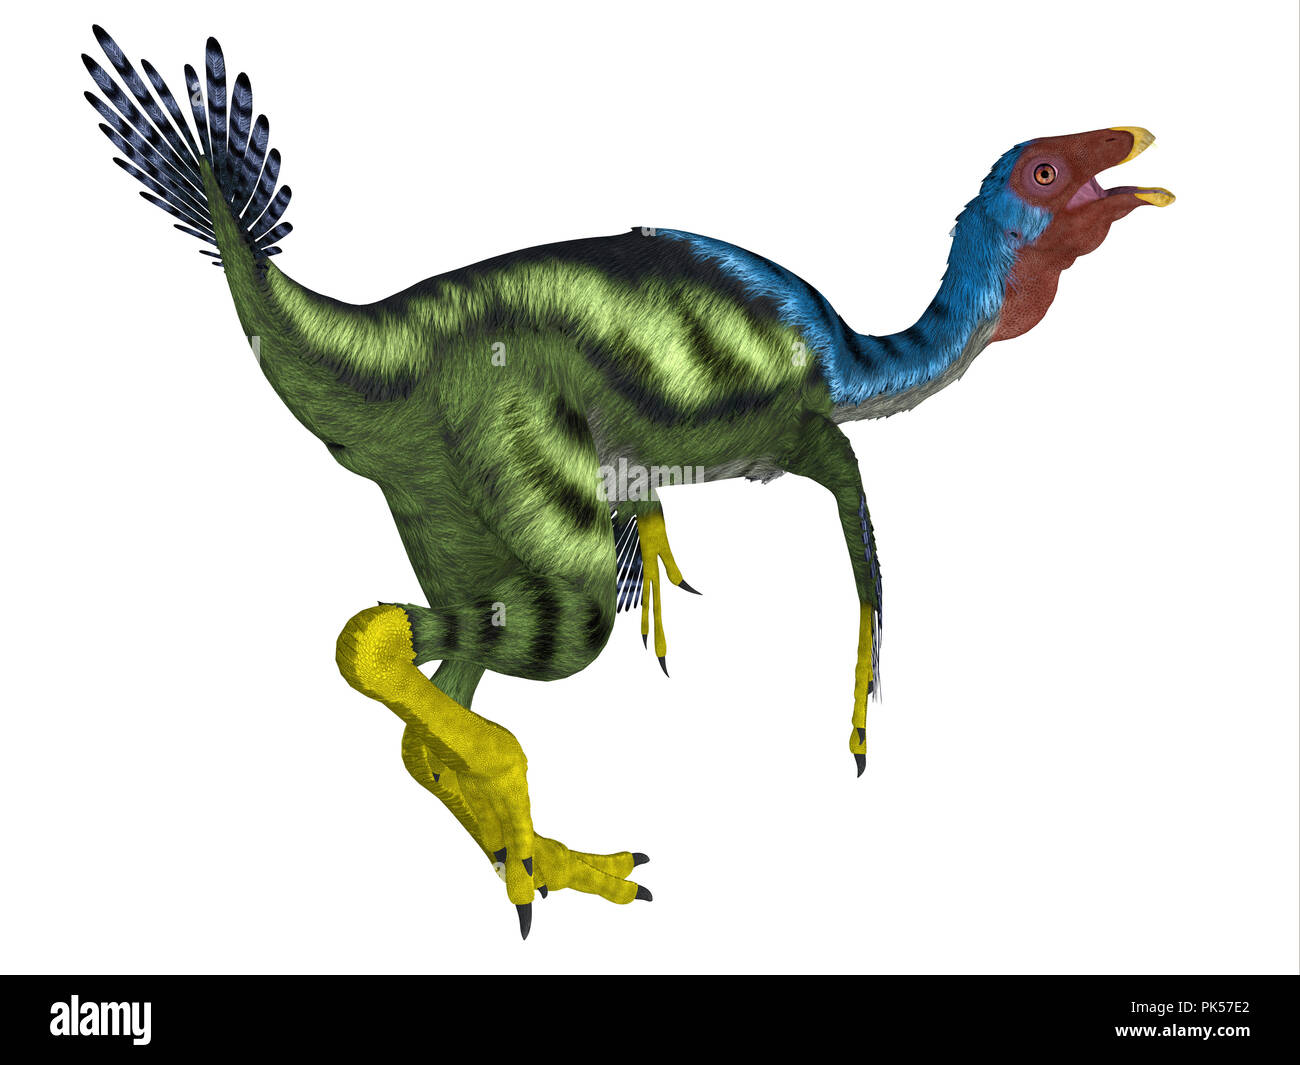 Caudipteryx Dinosaurier Schwanz - caudipteryx war ein oviraptor beaked fleischfressenden Dinosaurier, die in China in der Kreidezeit lebten. Stockfoto